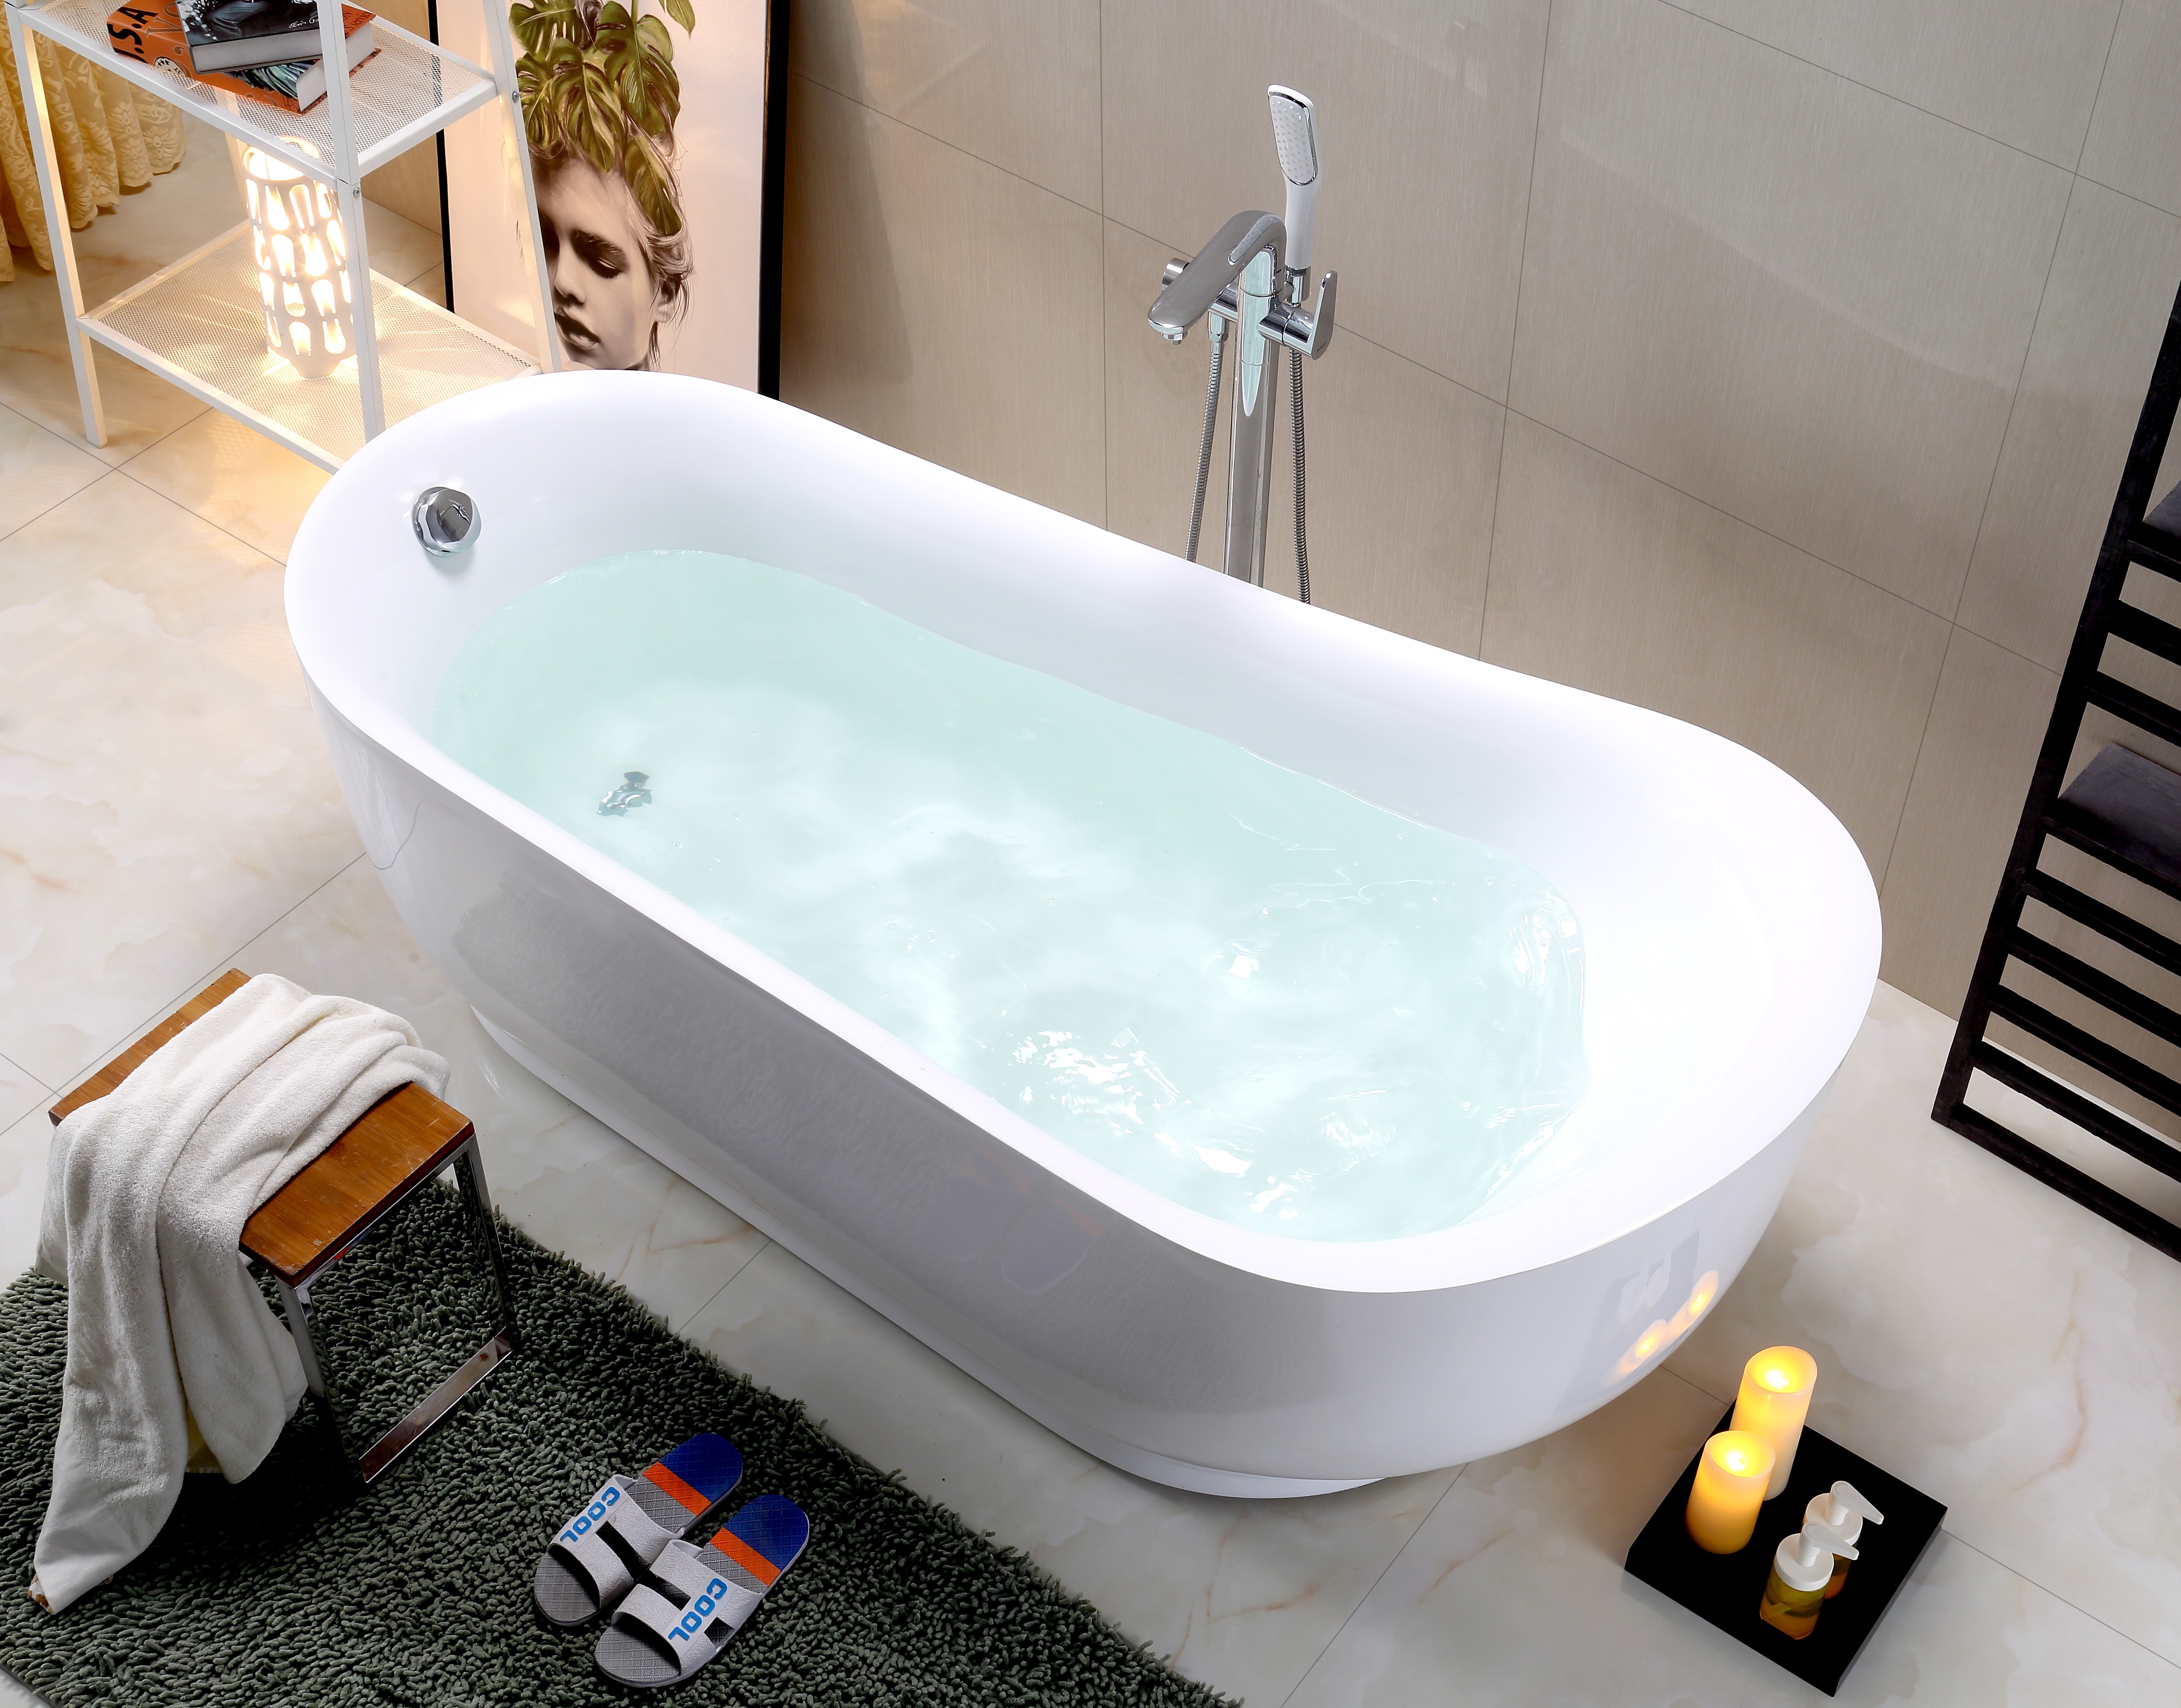 卫浴厂家直销新款独立浴缸欧式亚克力浴缸家居SPA双人浴盆图片